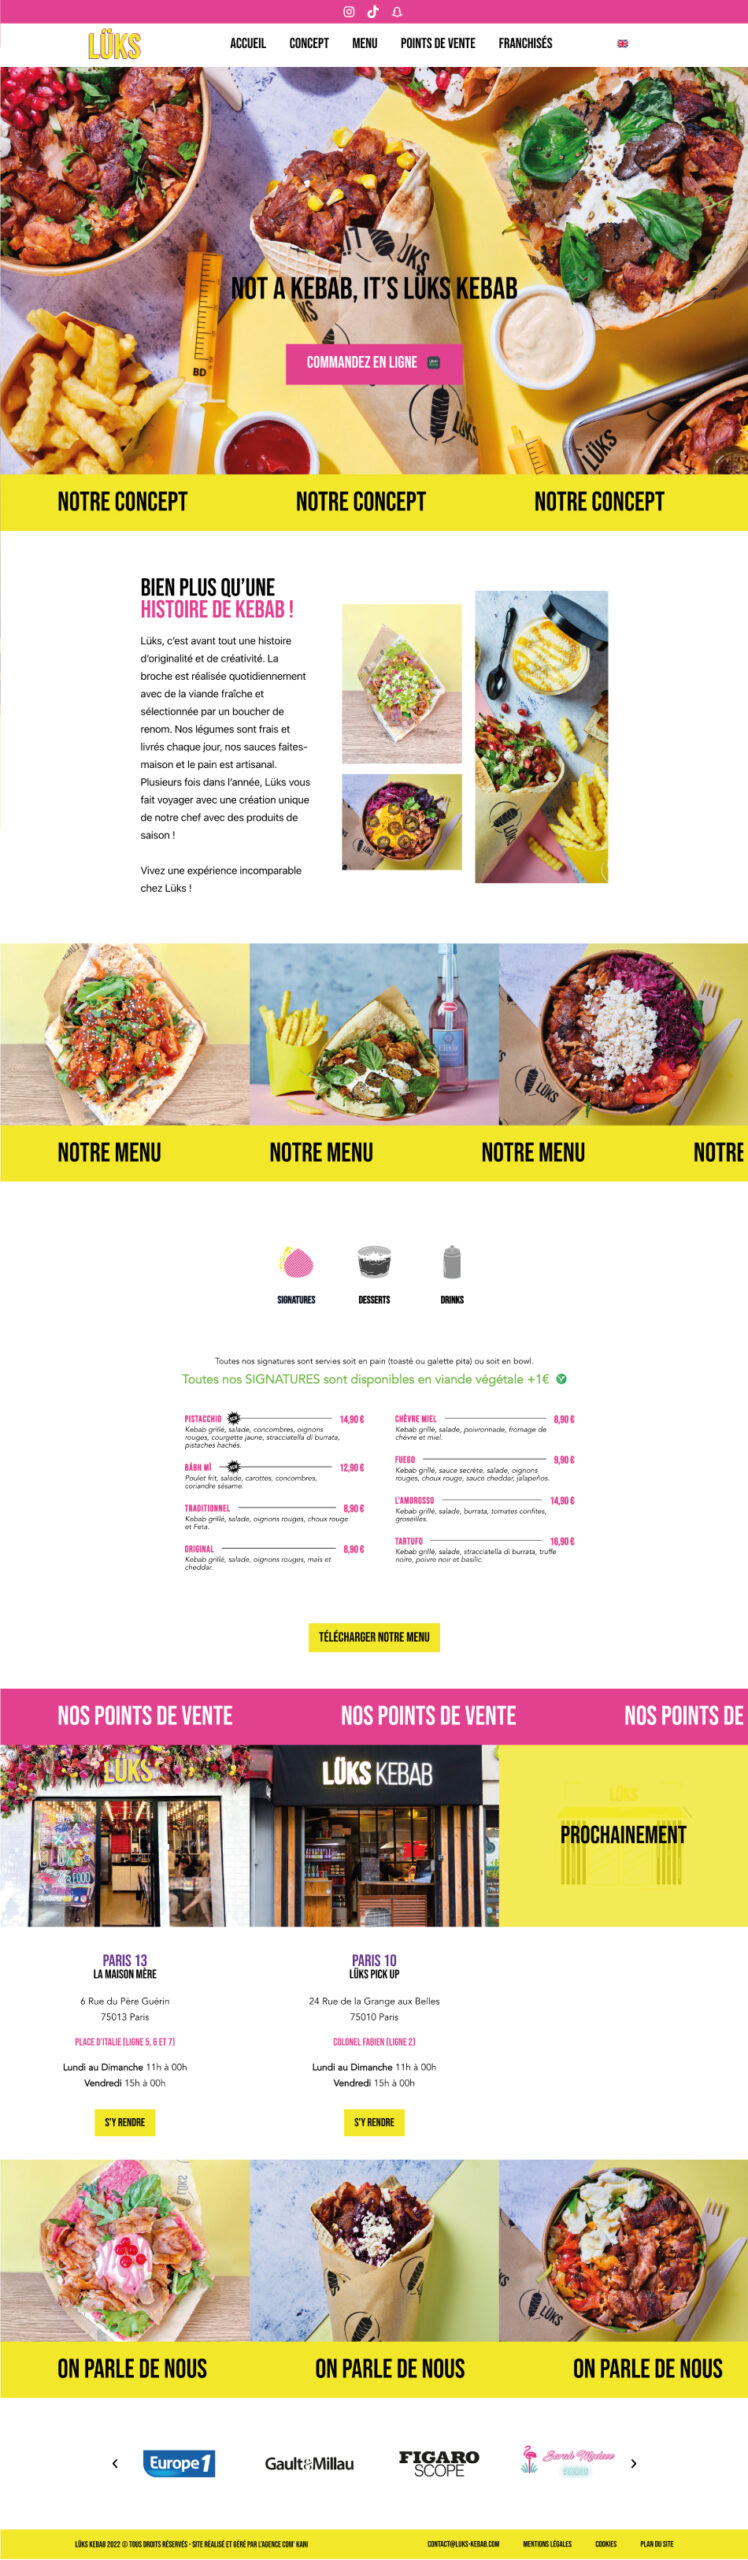 Lüks Kebab - Site réalisé par l'agence Com' Kani